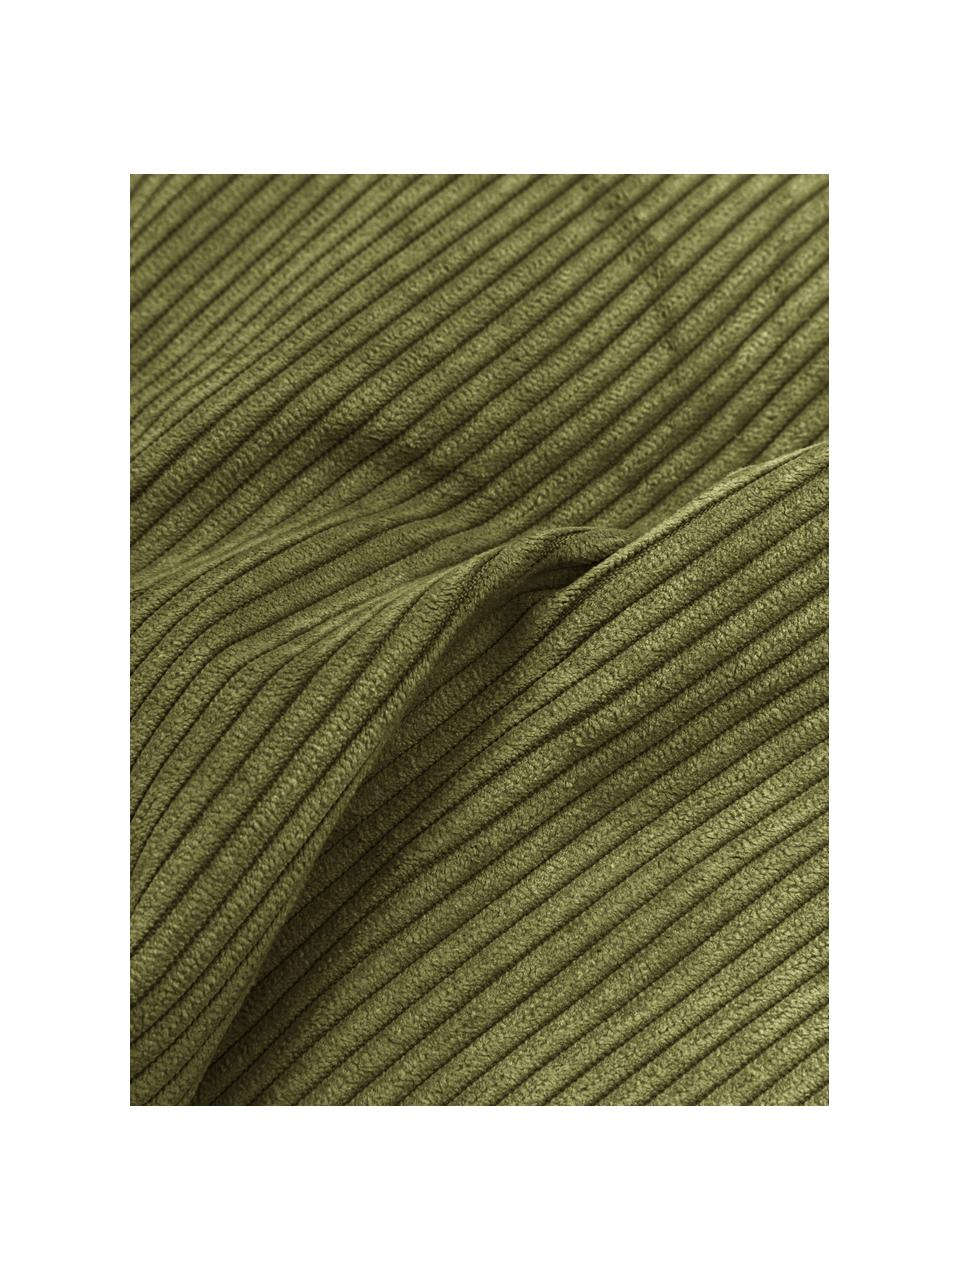 Bankkussen Lennon in groen van corduroy, Corduroy groen, 60 x 60 cm